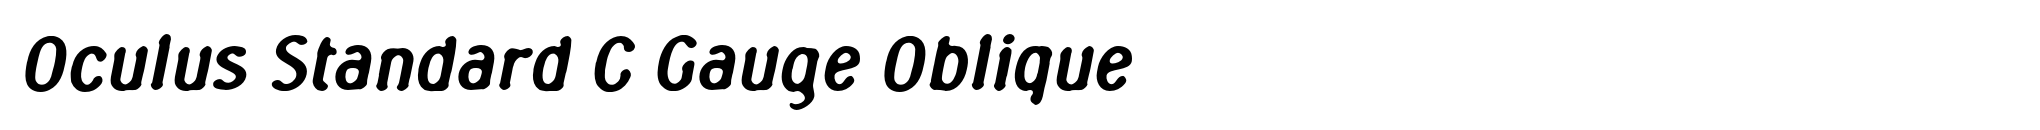 Oculus Standard C Gauge Oblique image